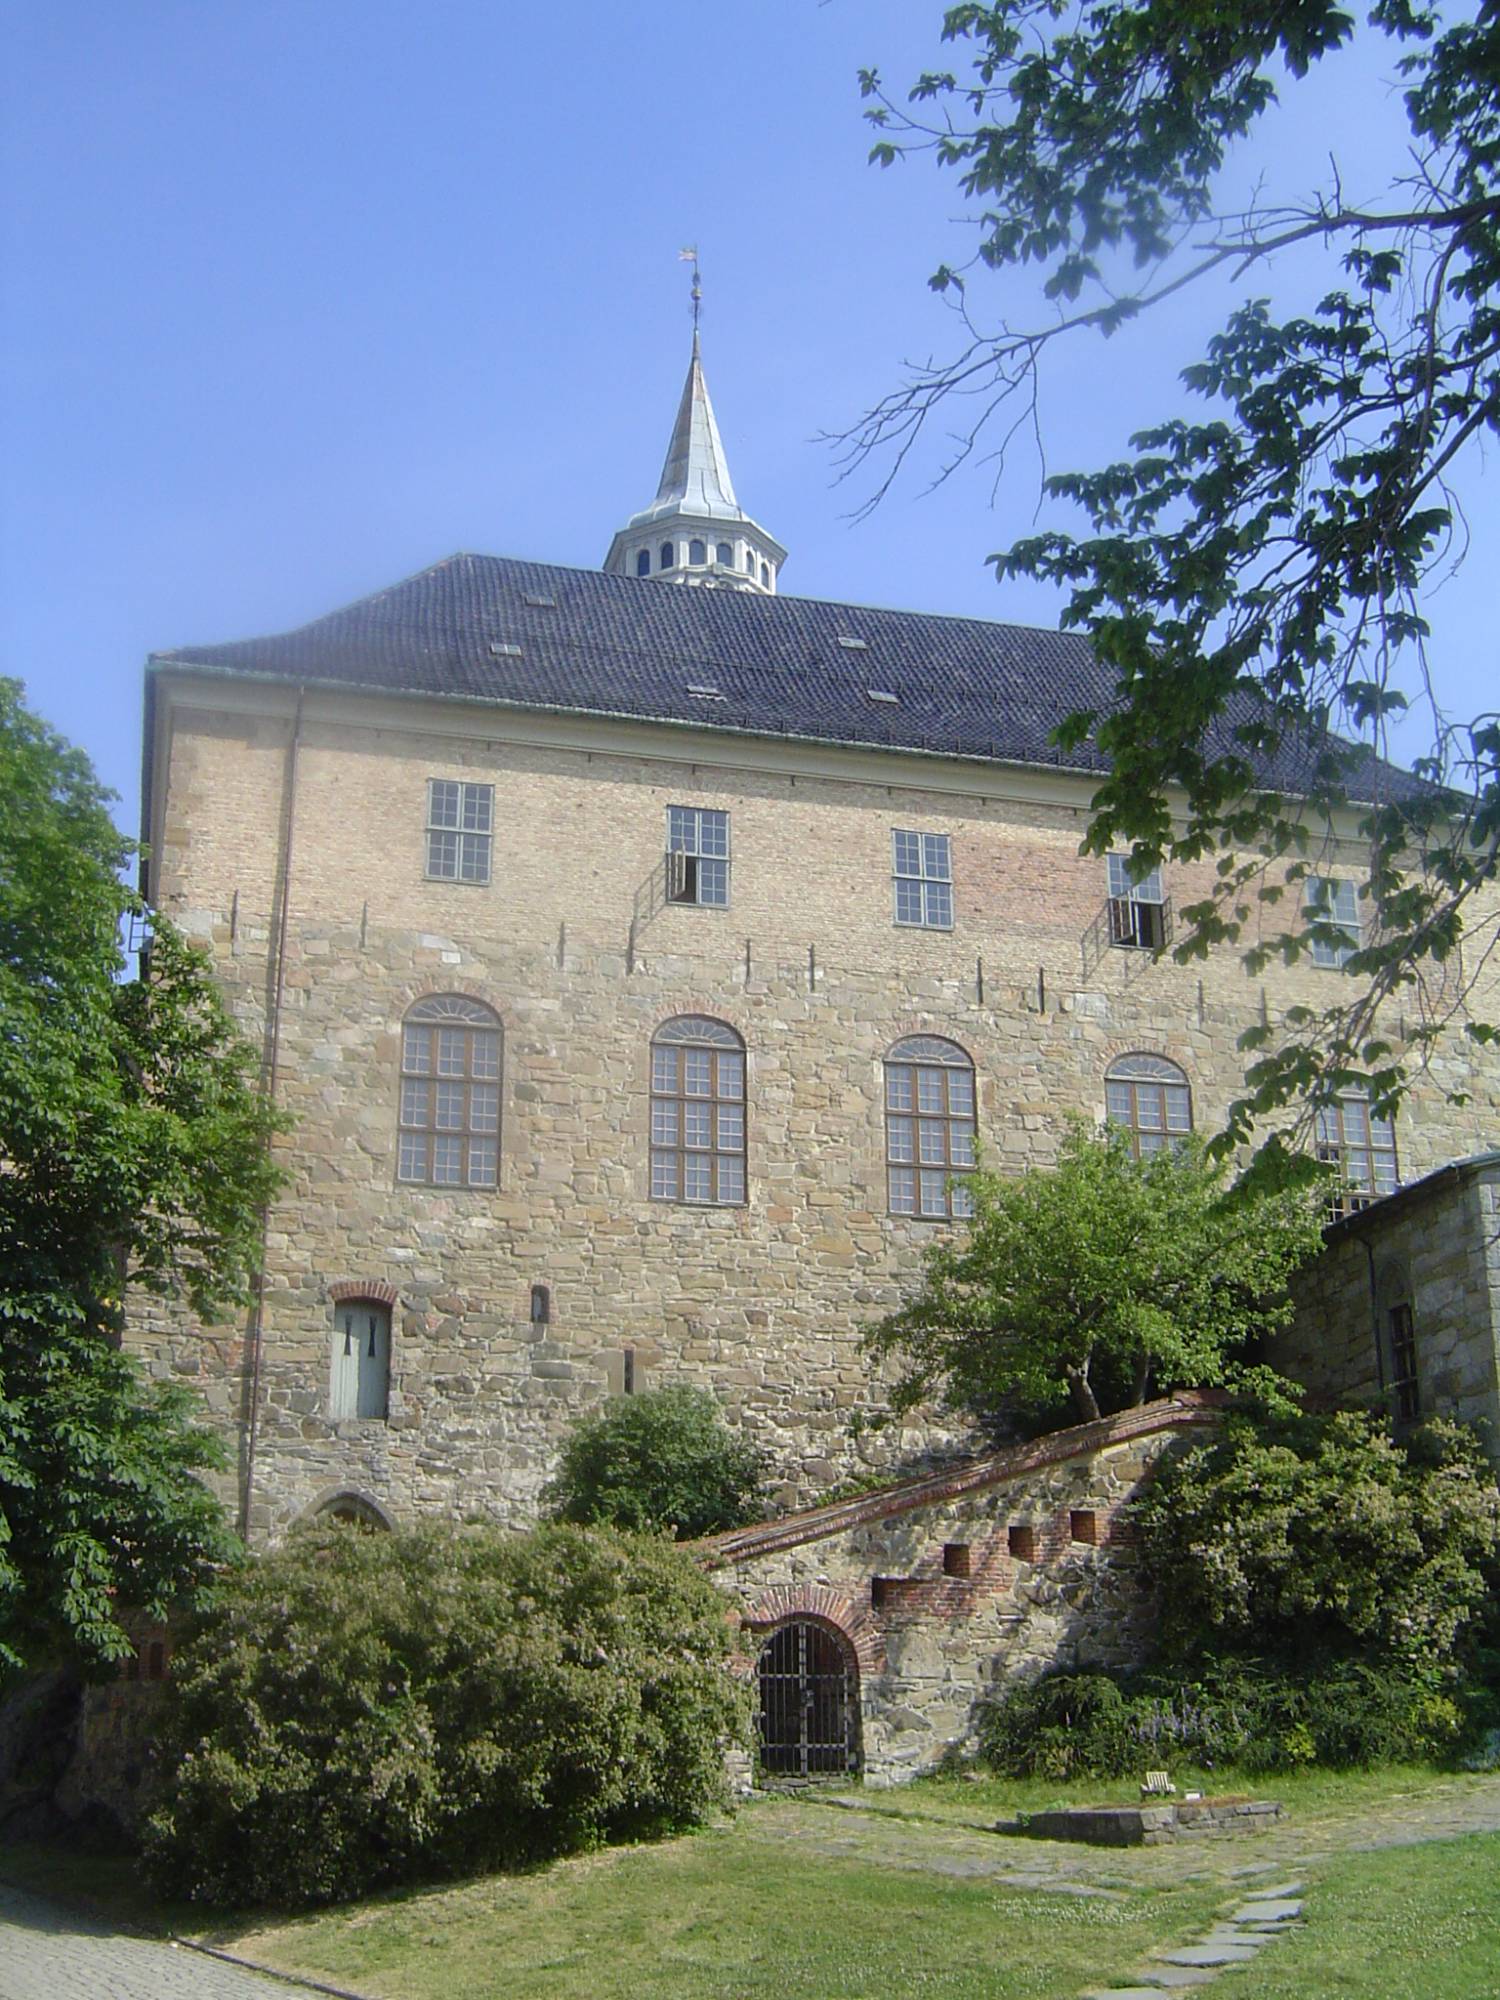 Oslo - Akerhaus Castle